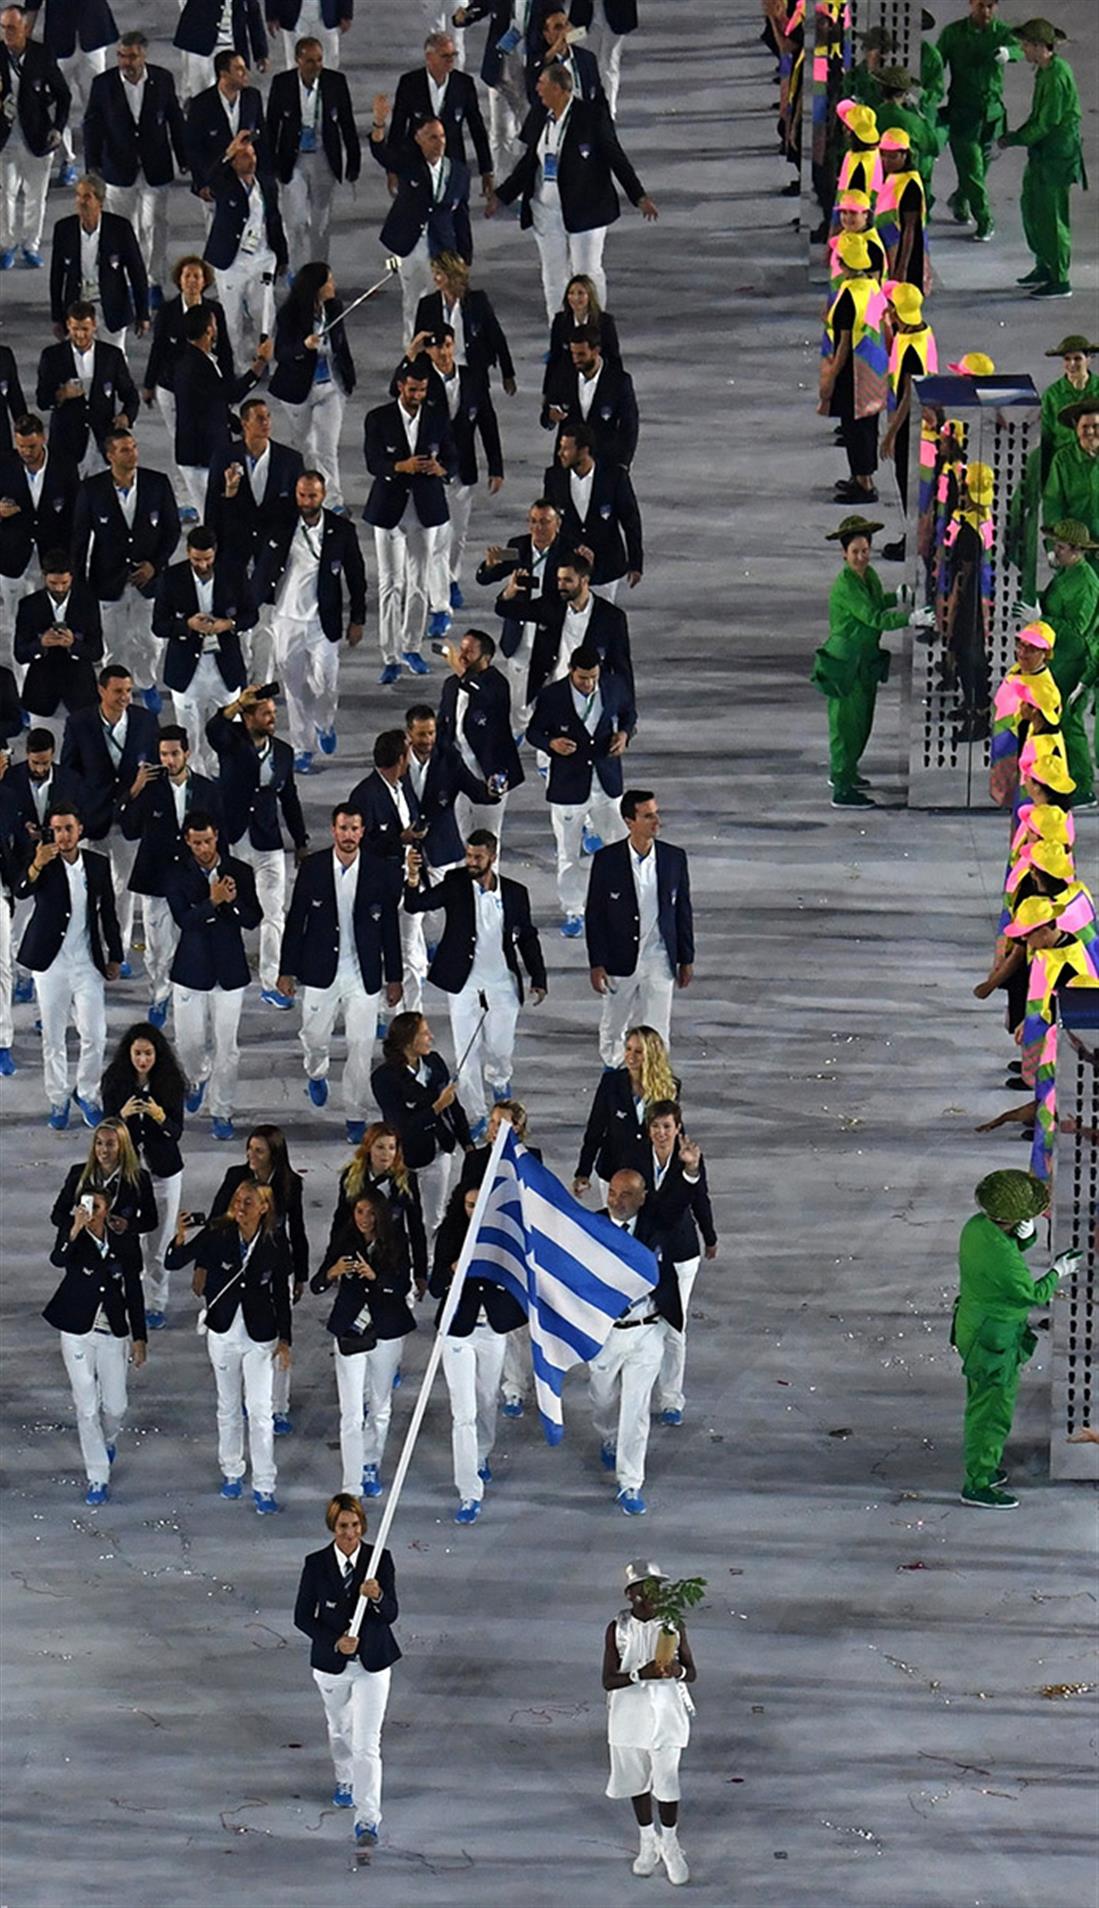 Ολυμπιακοί Αγώνες 2016 - Ρίο - τελετή έναρξης - Ελληνική αποστολή